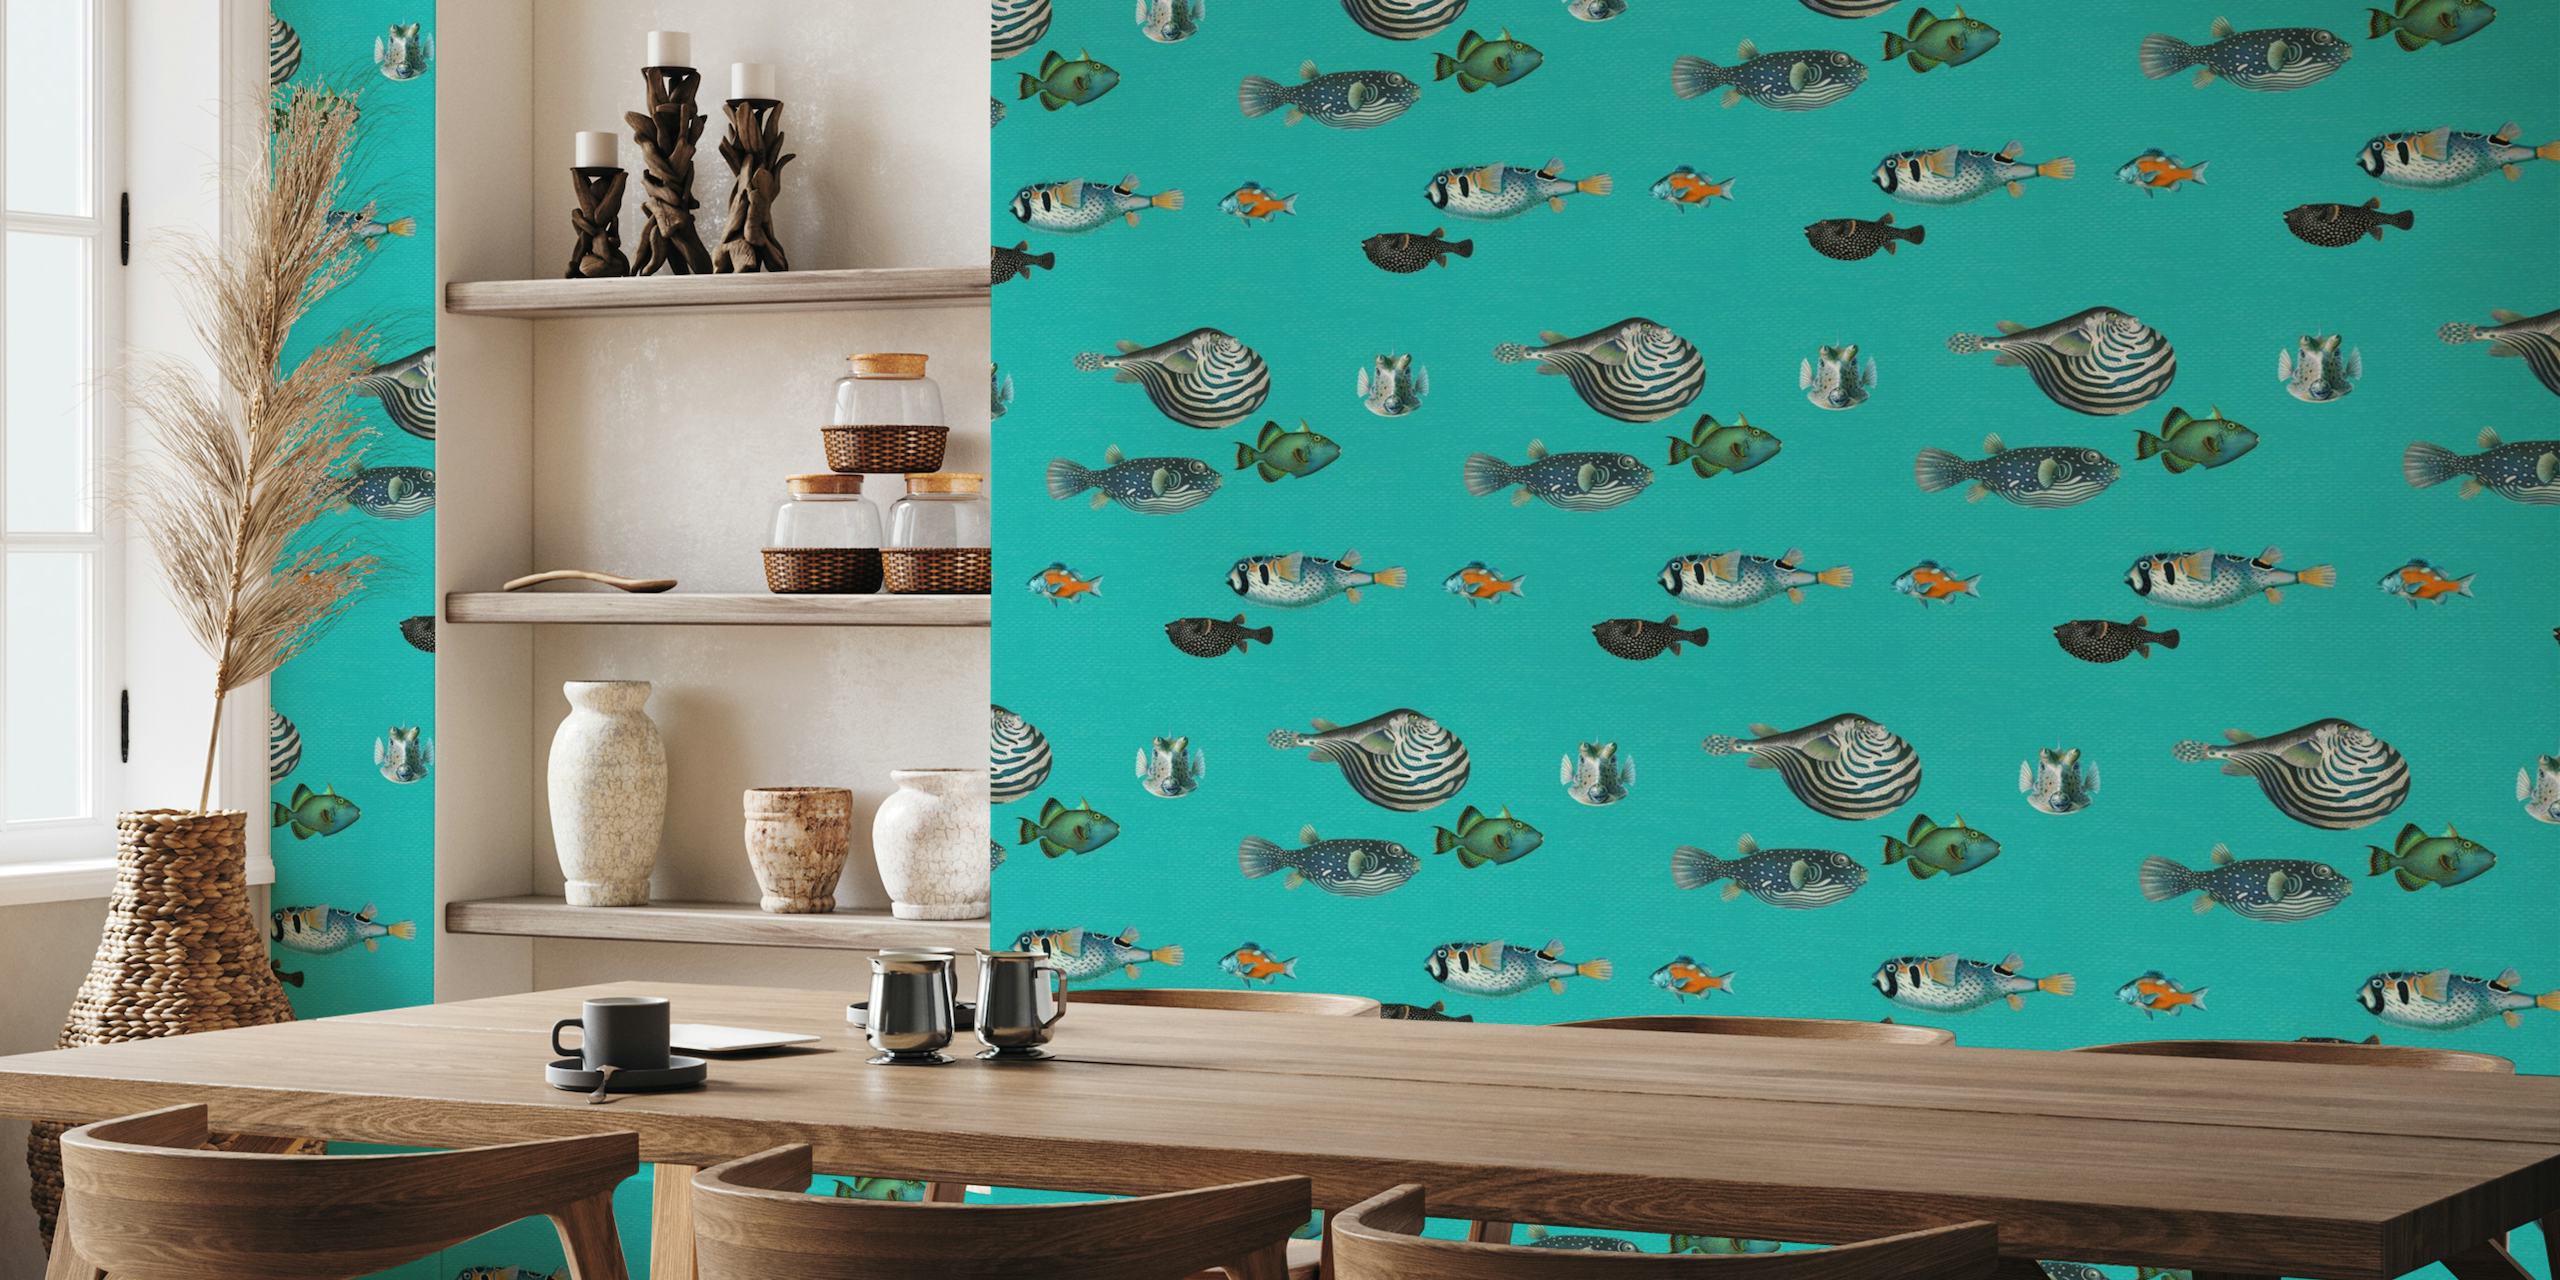 Padrão de peixe tropical em fotomural vinílico de parede azul turquesa